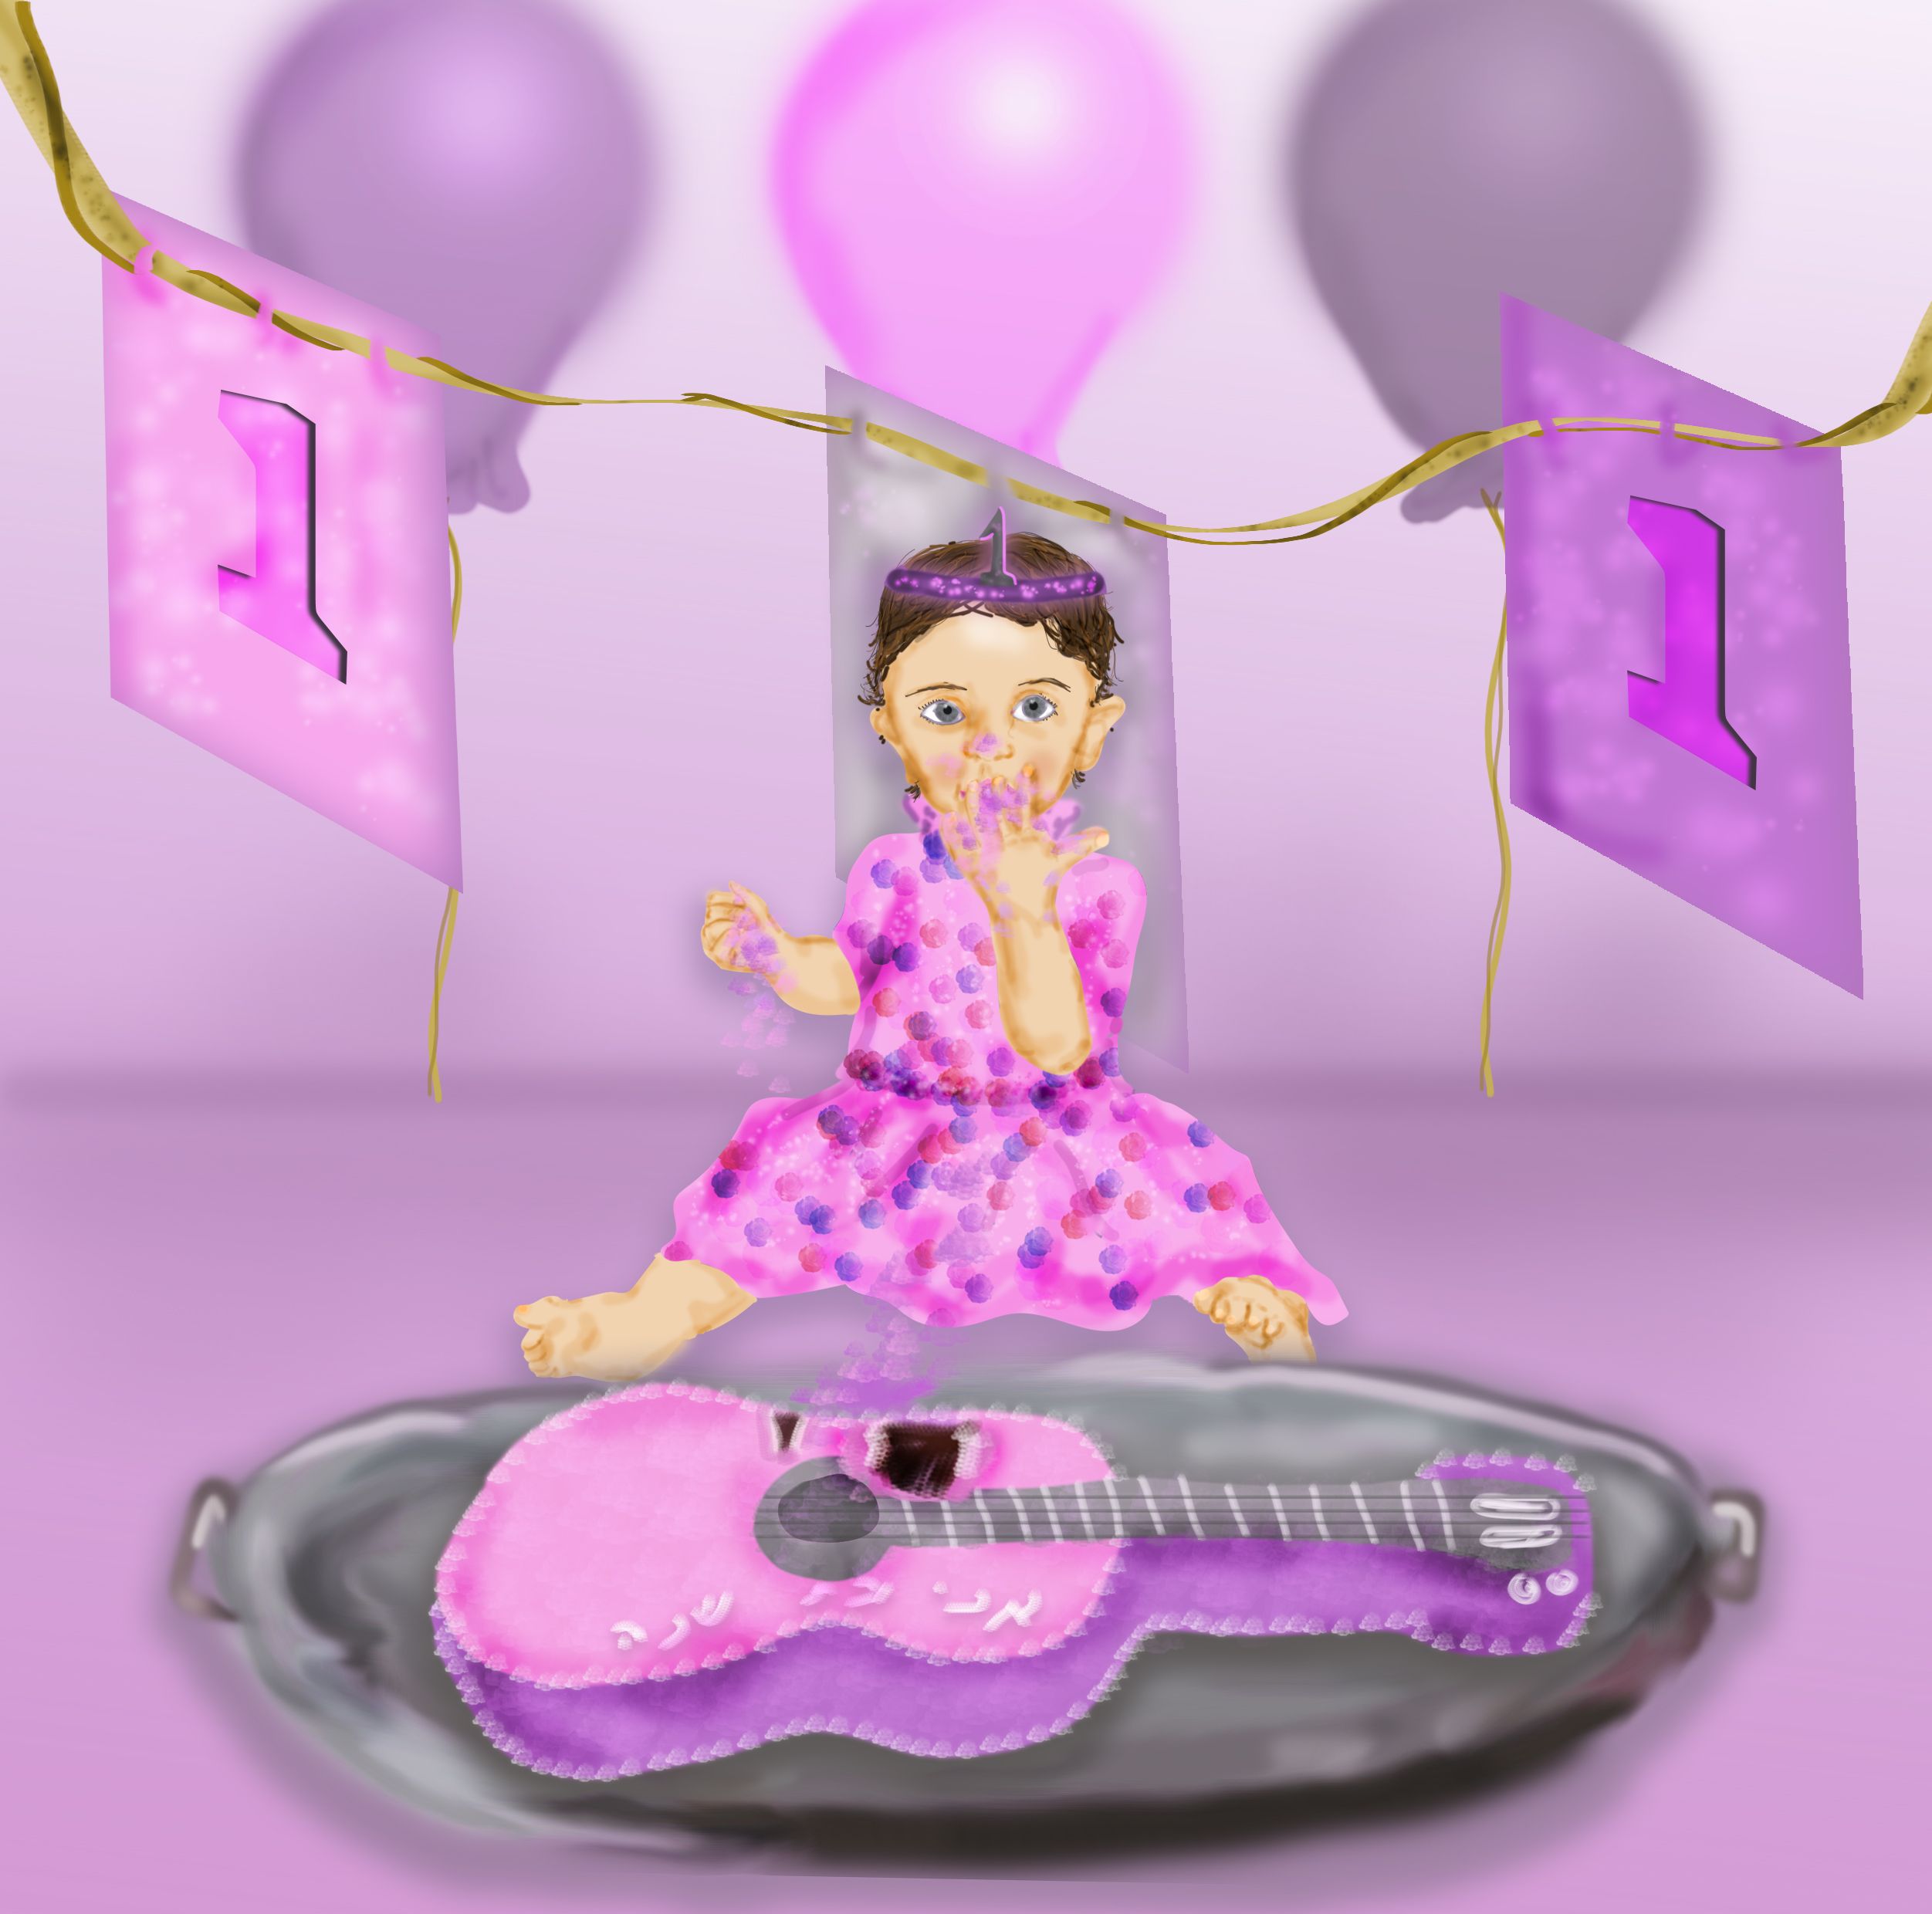 תינוקת עם עוגת גיטרה.jpg